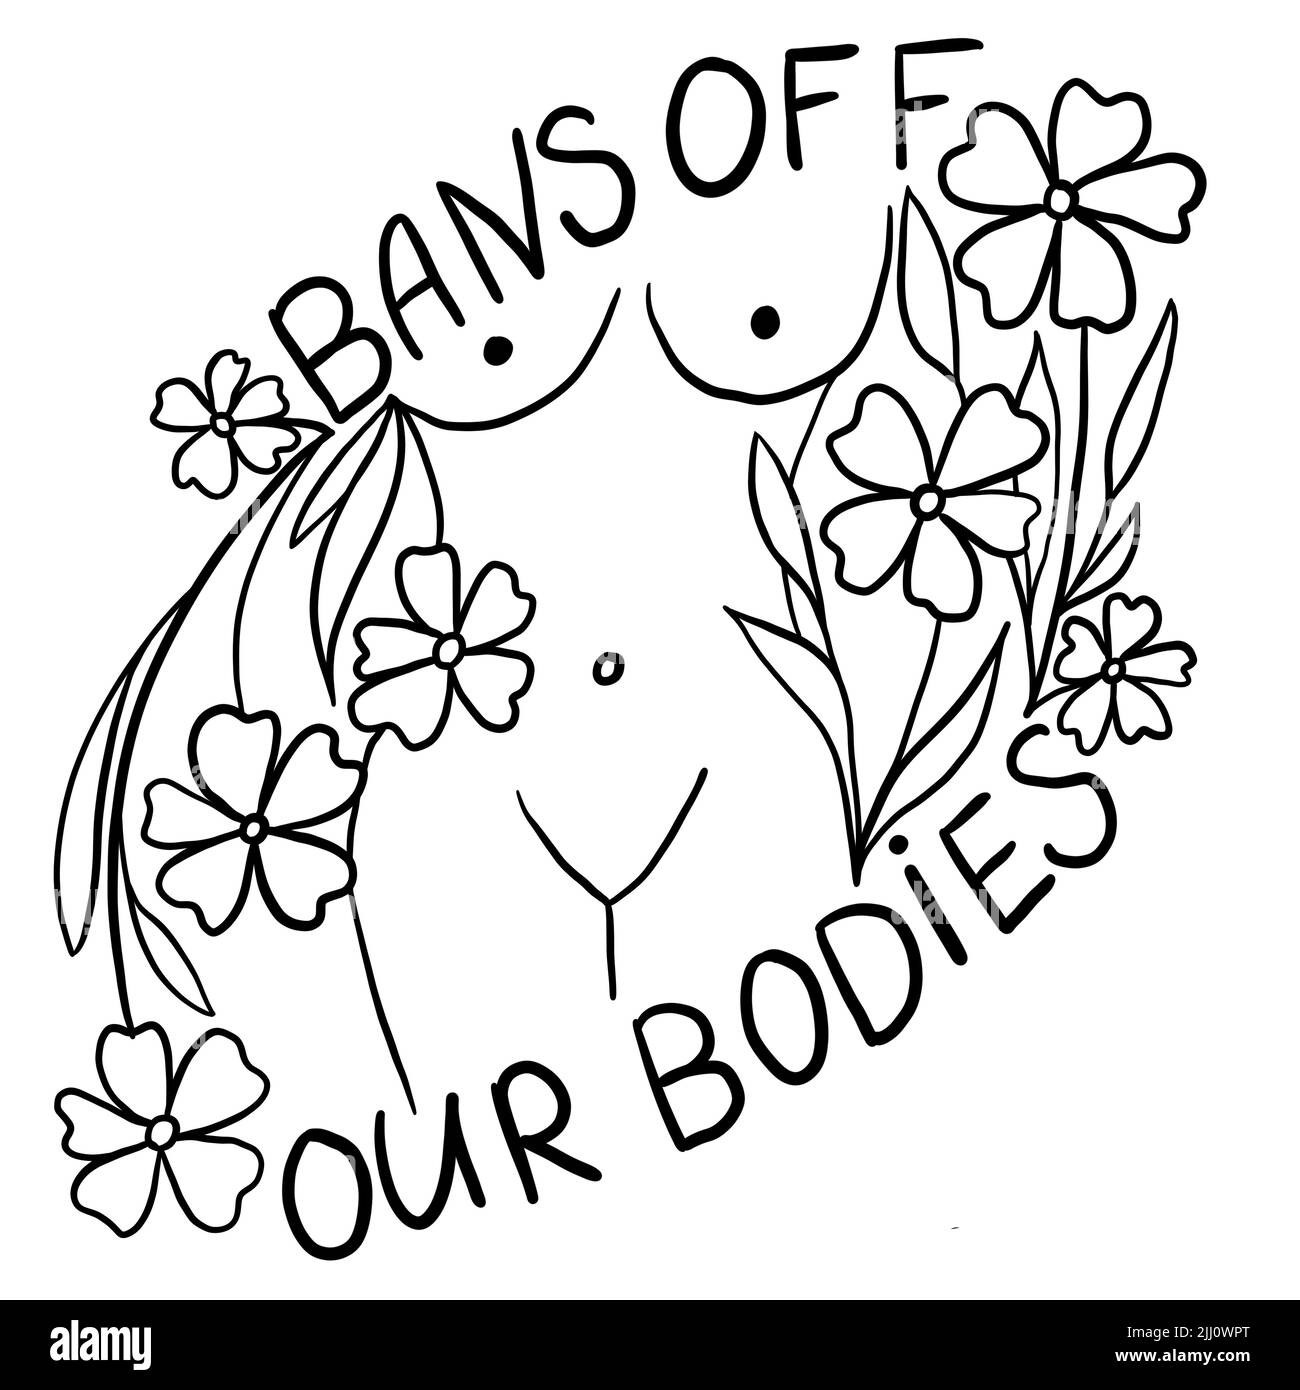 Vieta i nostri corpi disegno a mano illustrazione con il corpo della donna. Concetto di attivismo del femminismo, diritti riproduttivi di aborto, disegno di riga contro vanga Foto Stock